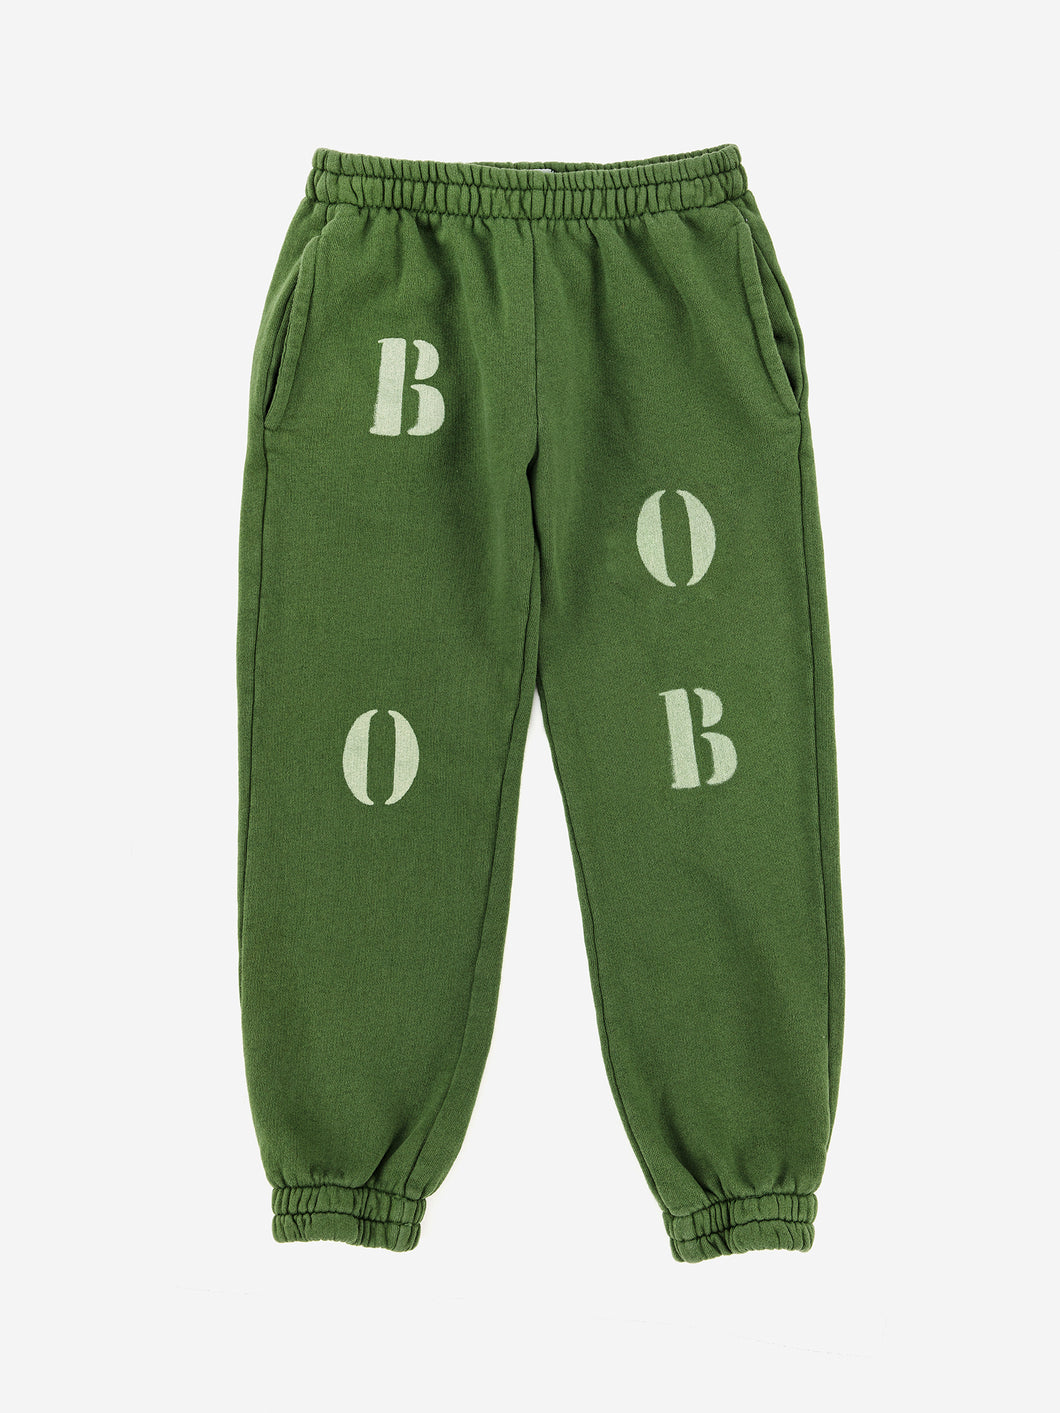 Bobo White jogging pants / ボボショーズ キッズスウェットパンツ ロゴ